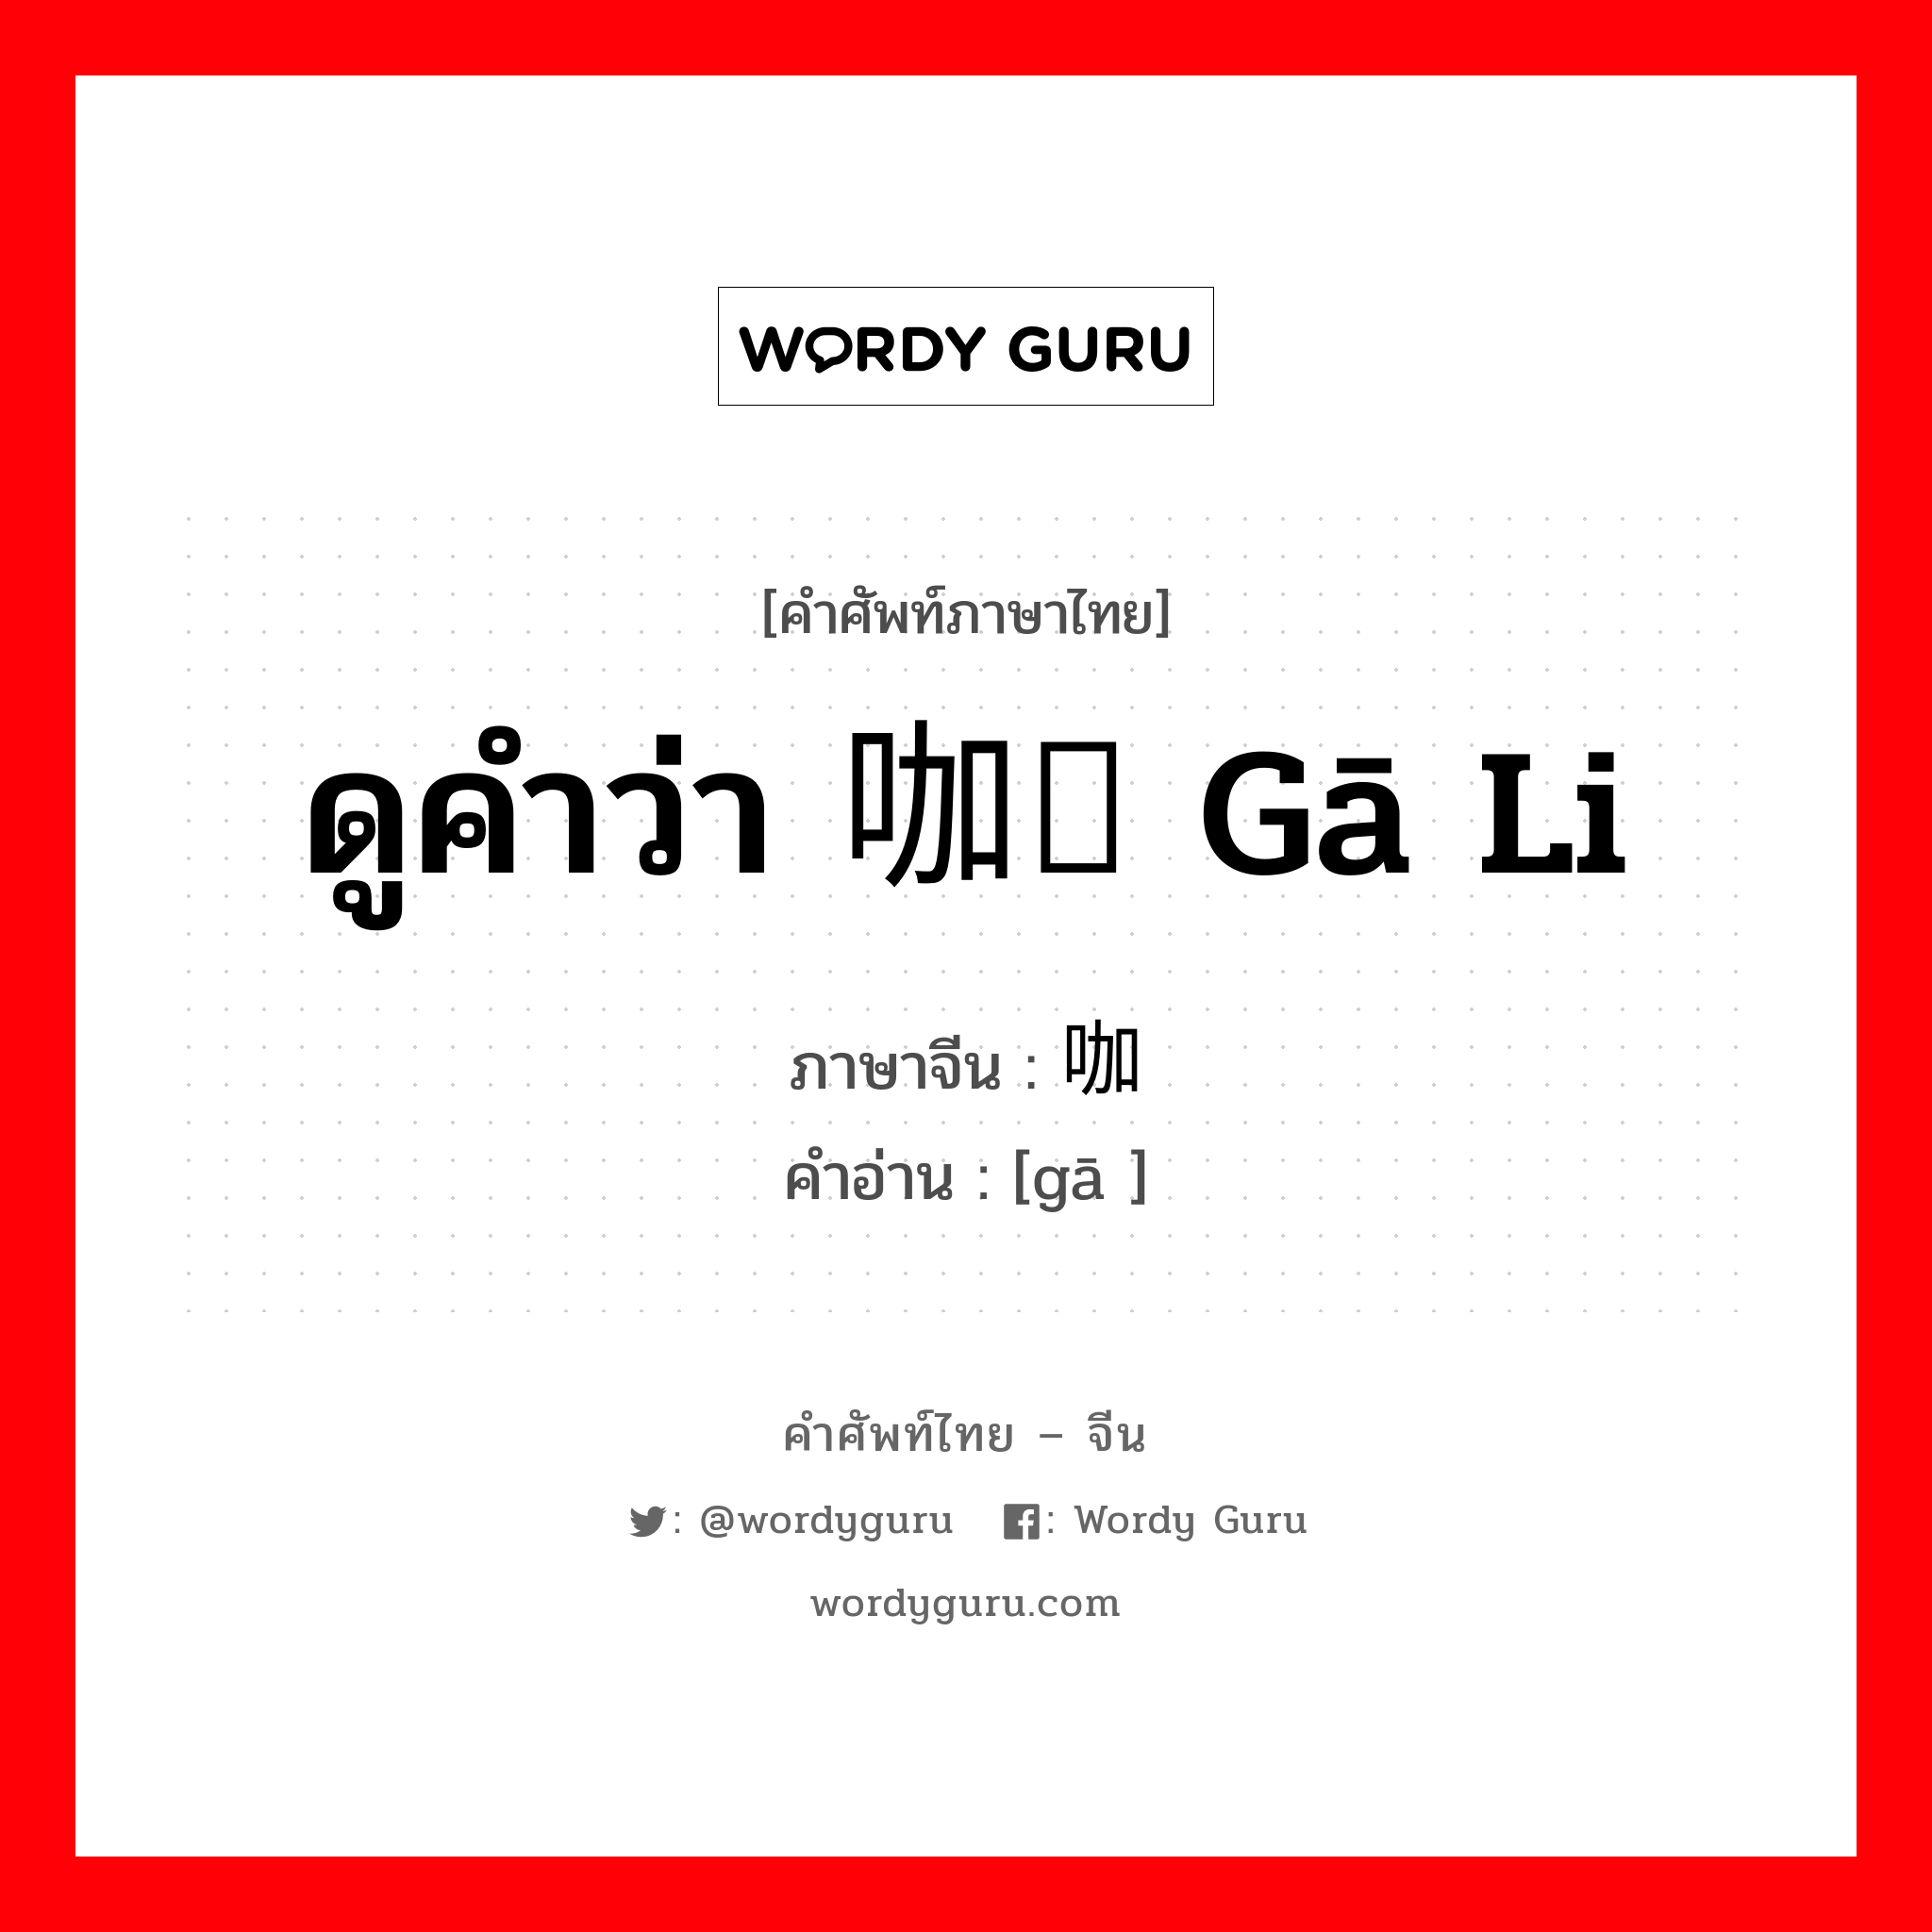 ดูคำว่า 咖喱 gā li ภาษาจีนคืออะไร, คำศัพท์ภาษาไทย - จีน ดูคำว่า 咖喱 gā li ภาษาจีน 咖 คำอ่าน [gā ]